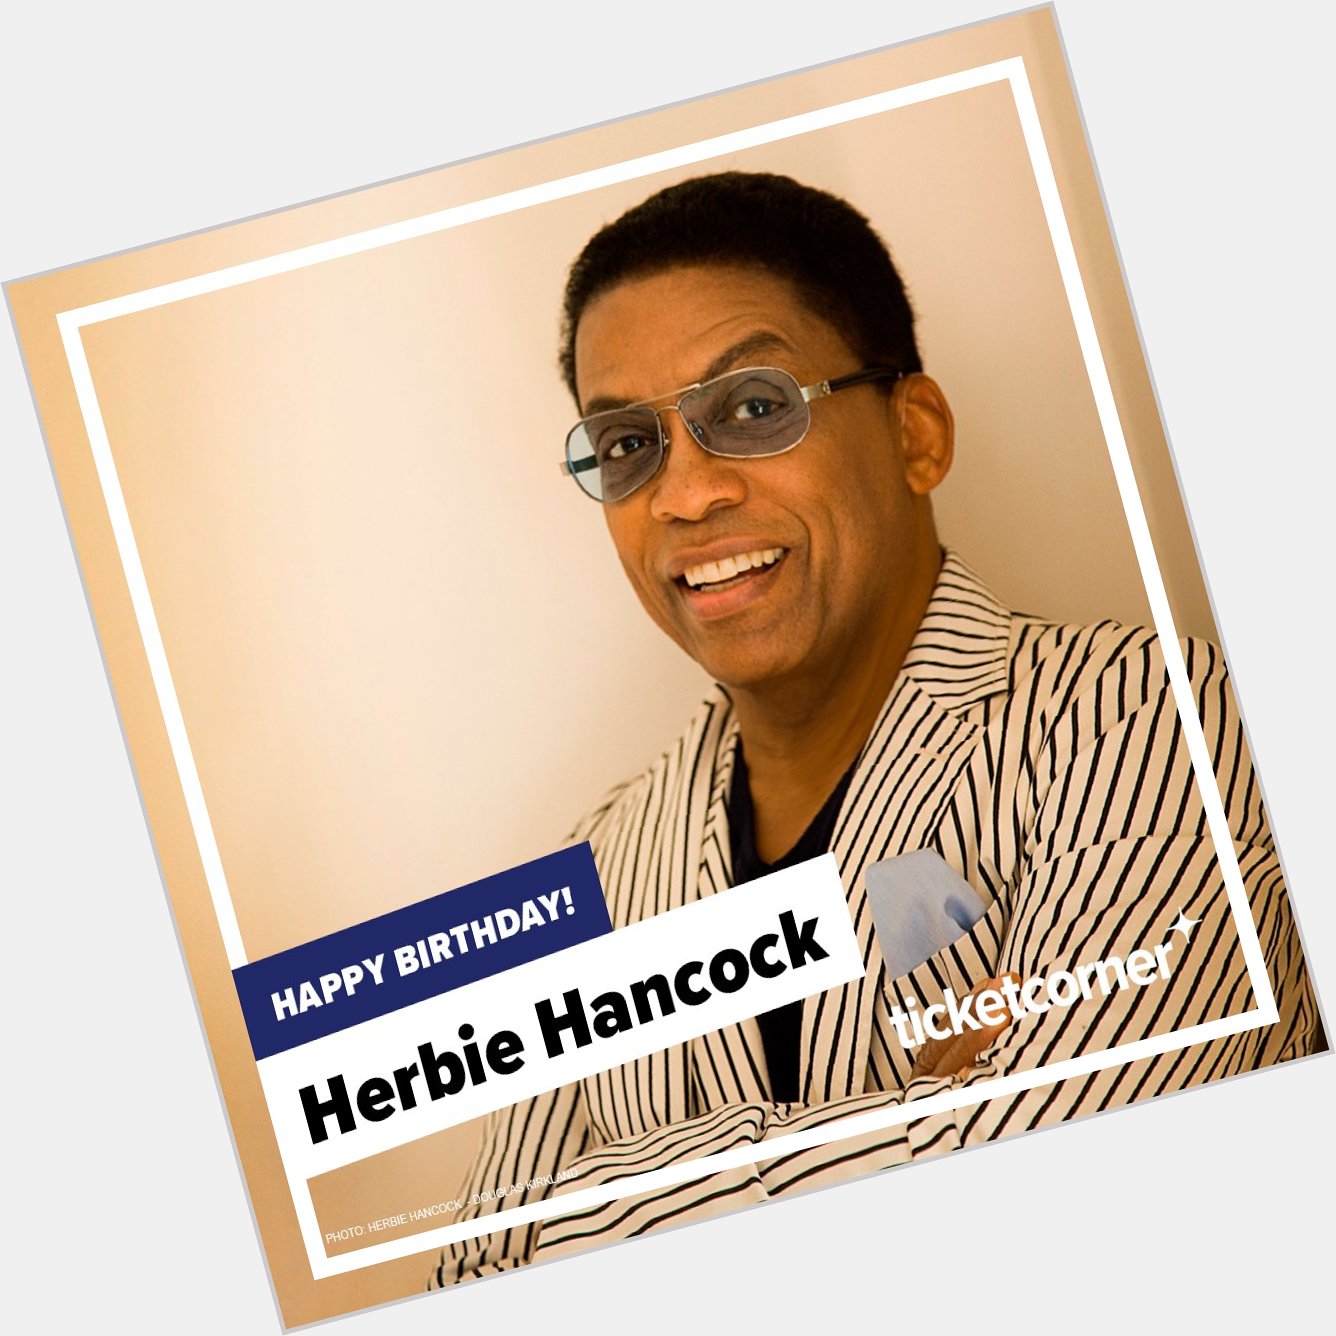    Happy birthday Herbie Hancock   